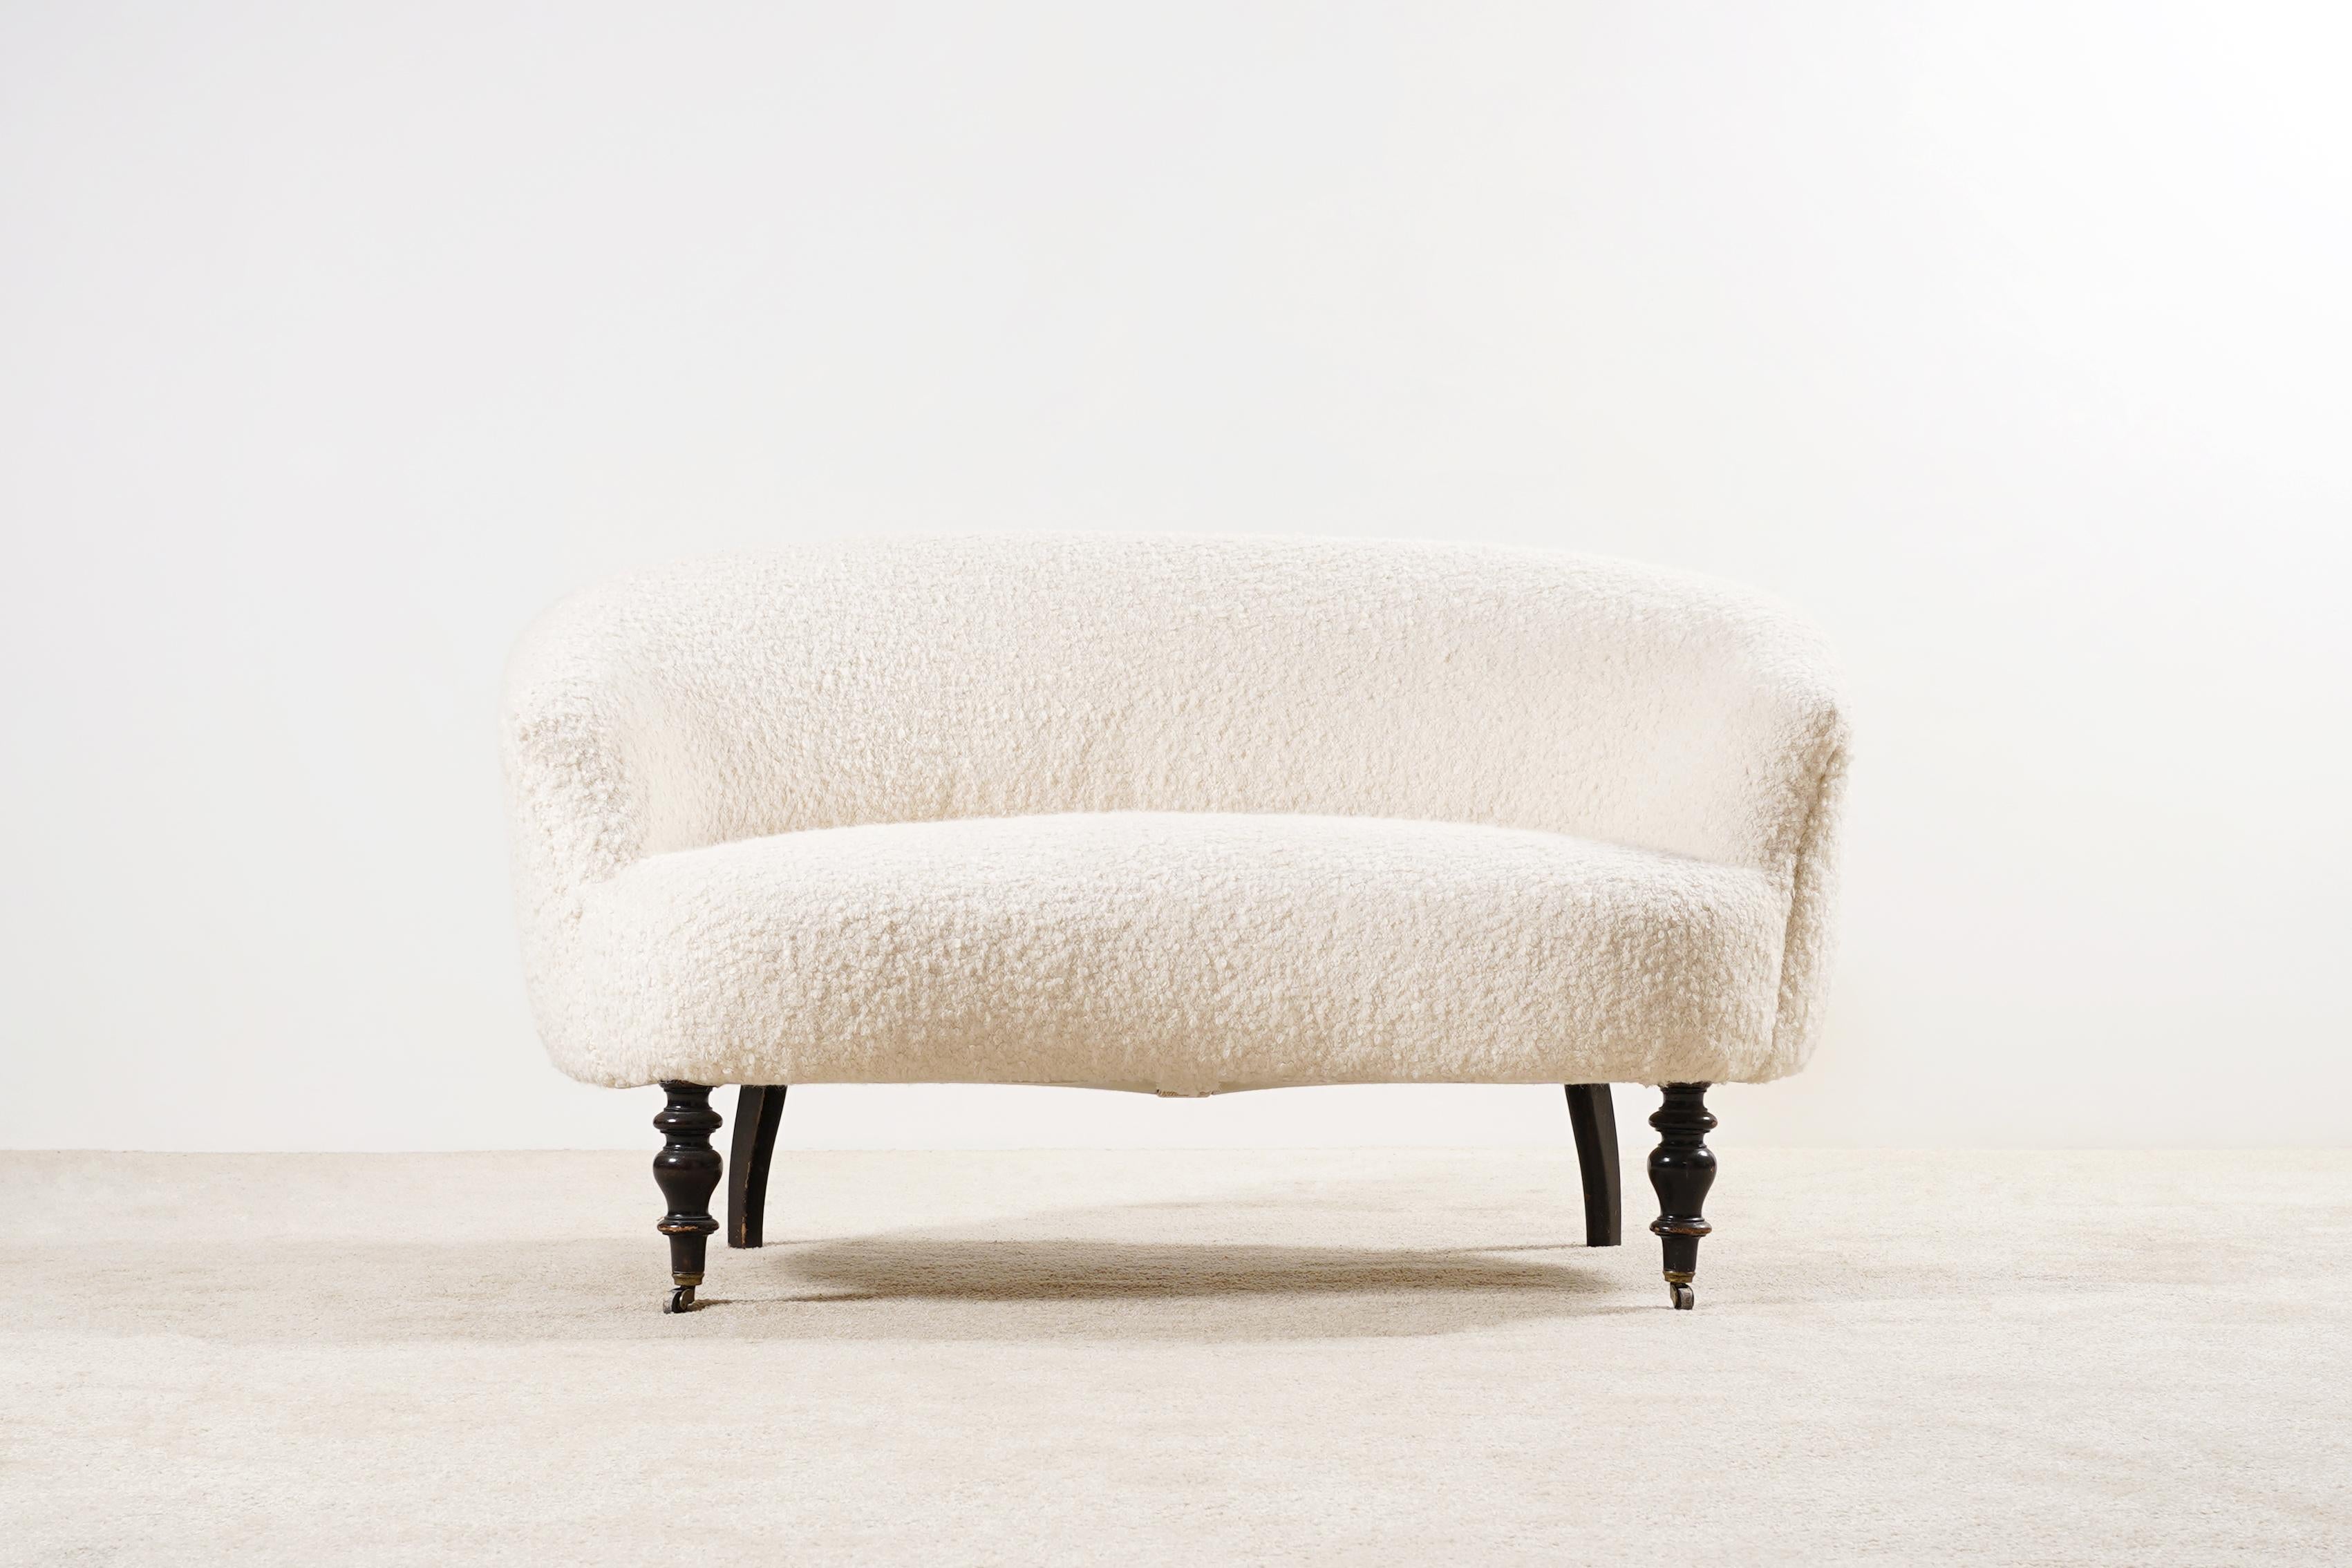 Zweisitziges geschwungenes Sofa aus dem späten 19. Jahrhundert.
Wunderschöne Form und Kurven. Sehr bequemer Sitz.
Die Vorderbeine stehen auf Messingrollen.

Dieses Sofa wurde vollständig restauriert und von den besten französischen Handwerkern auf